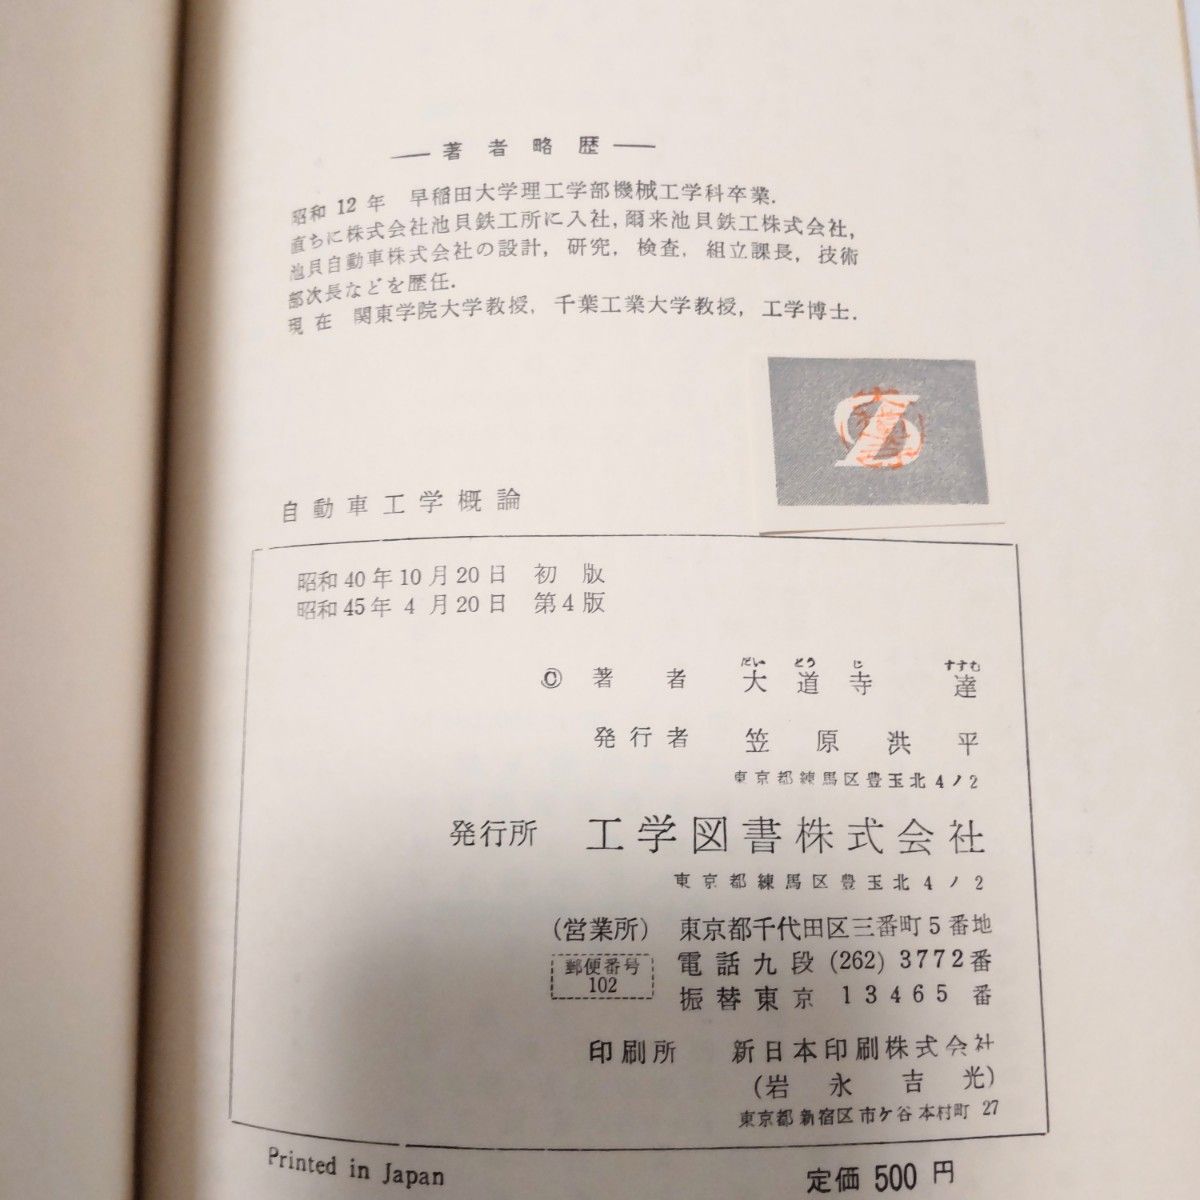 自動車工学概論　大道寺達著　工学図書株式会社版　昭和45年4月発行